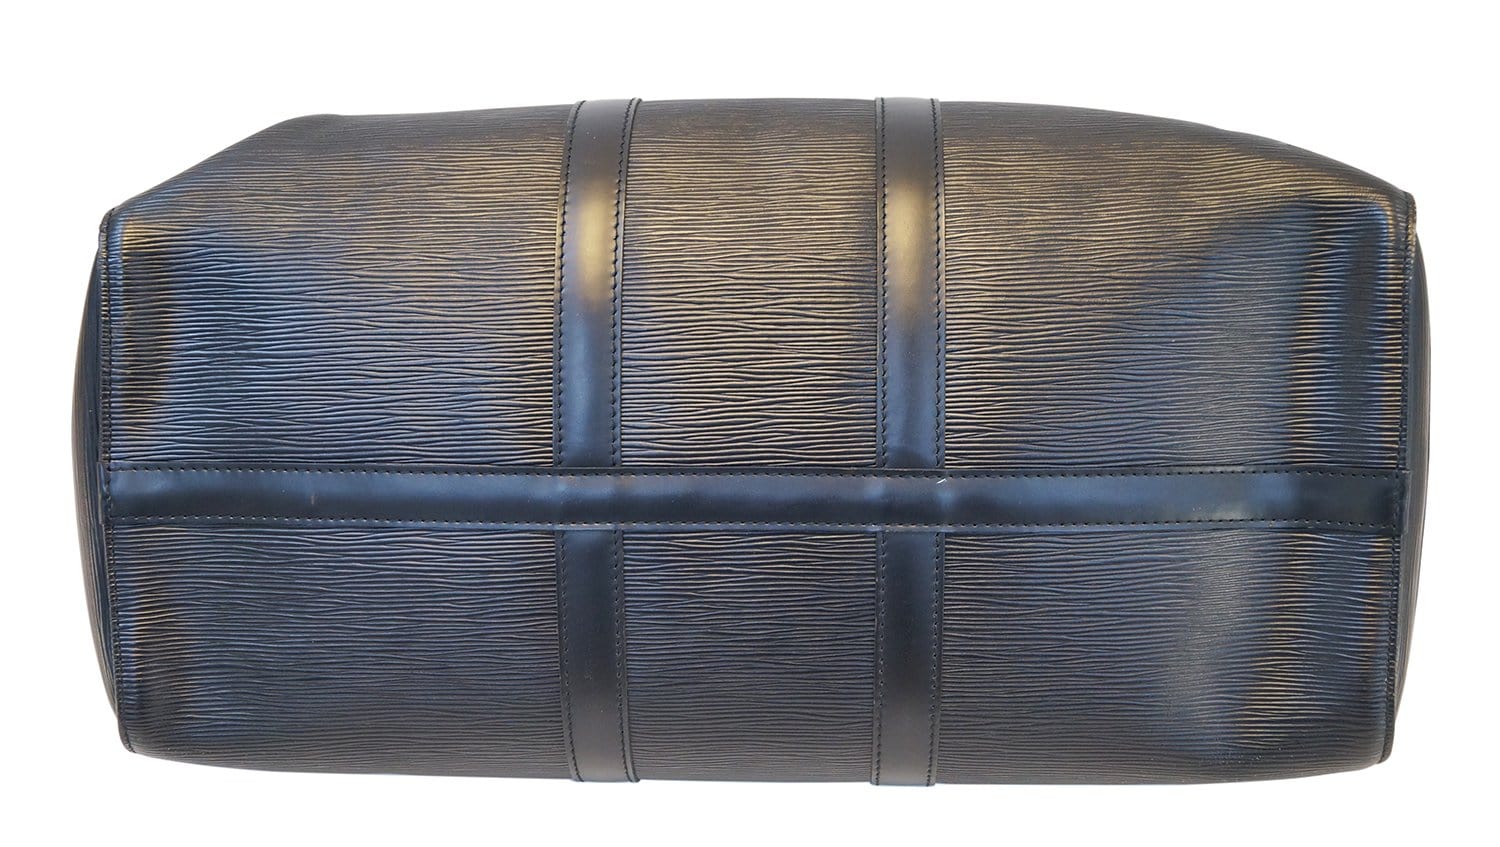 Authentic LOUIS VUITTON Epi Leather Black Keepall 45 Travel Boston Bag